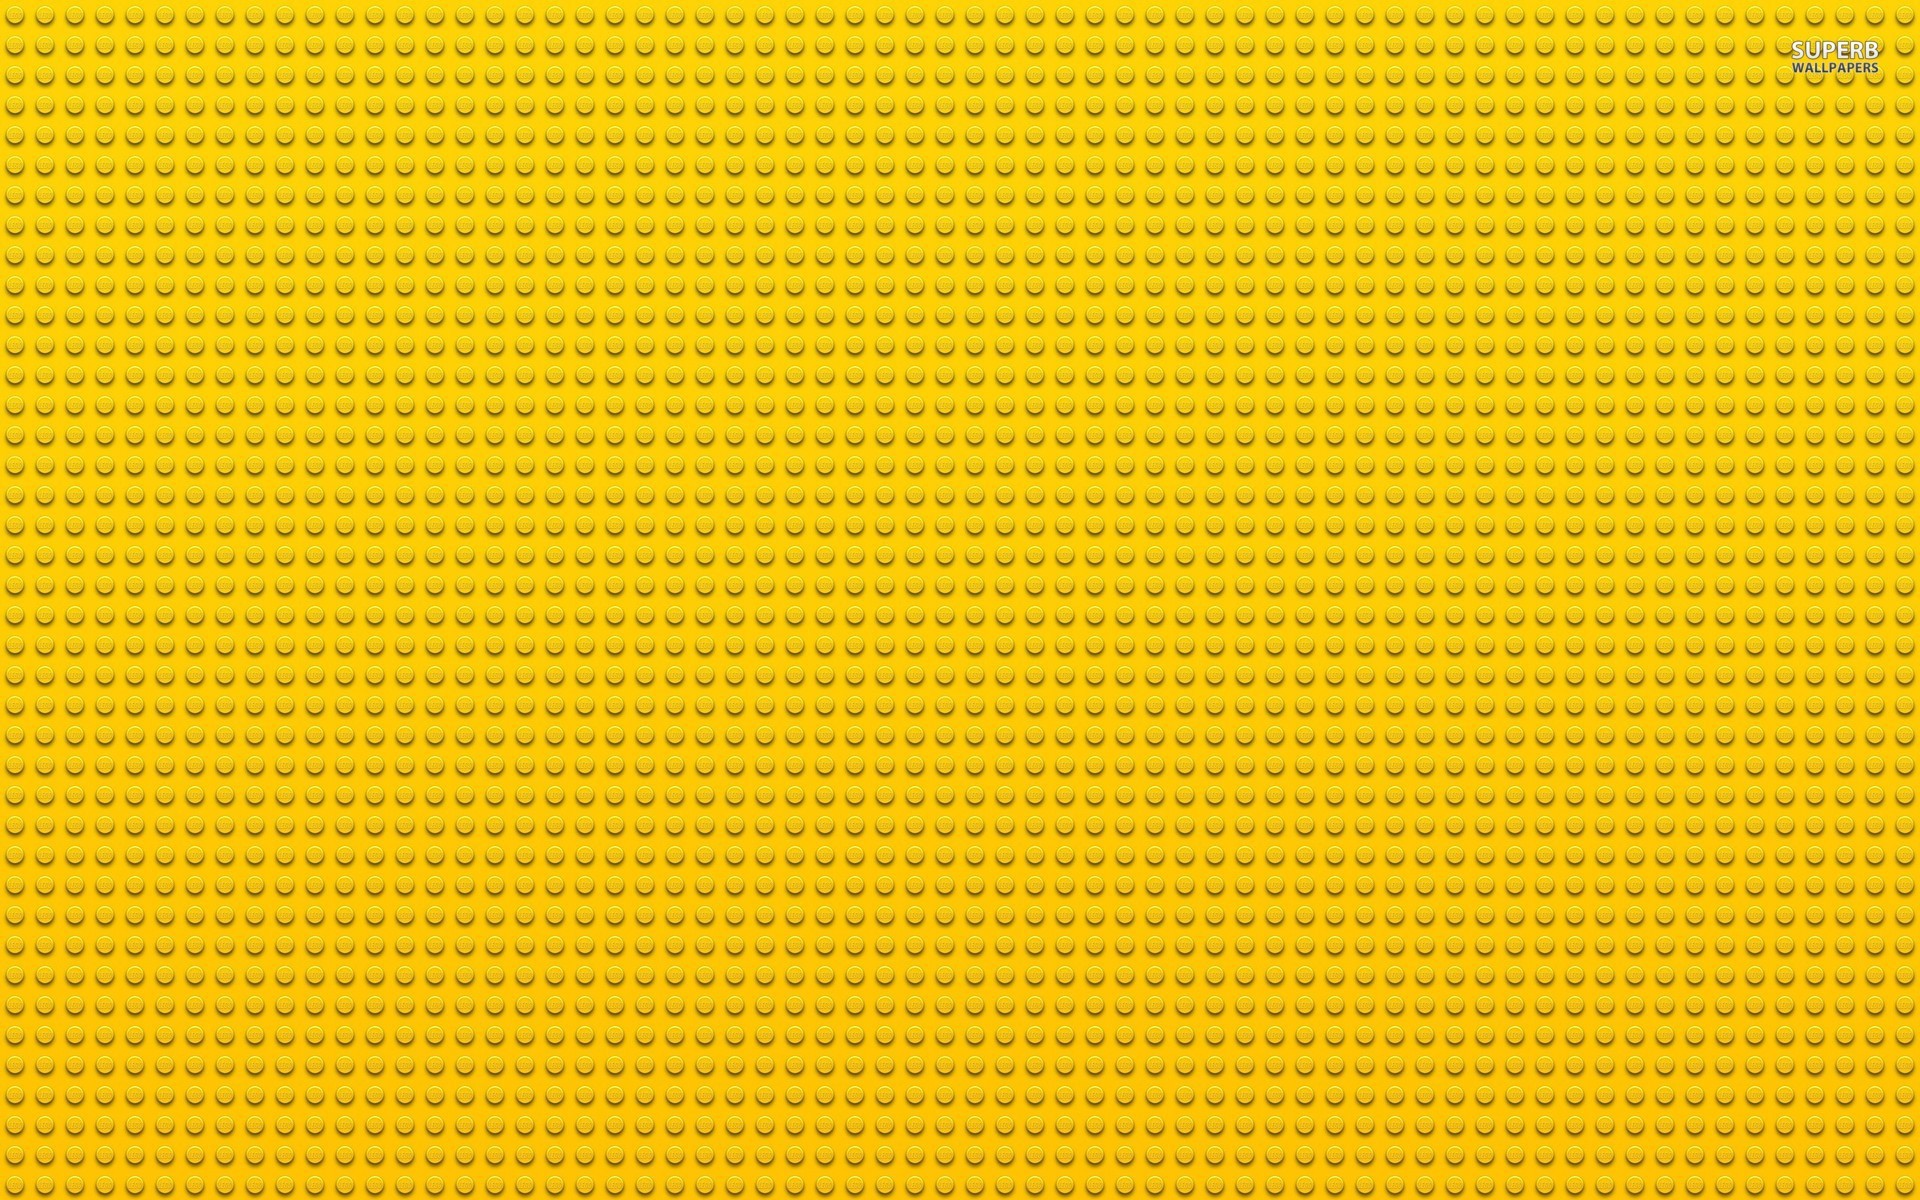 1920x1200 Lego Wallpaper